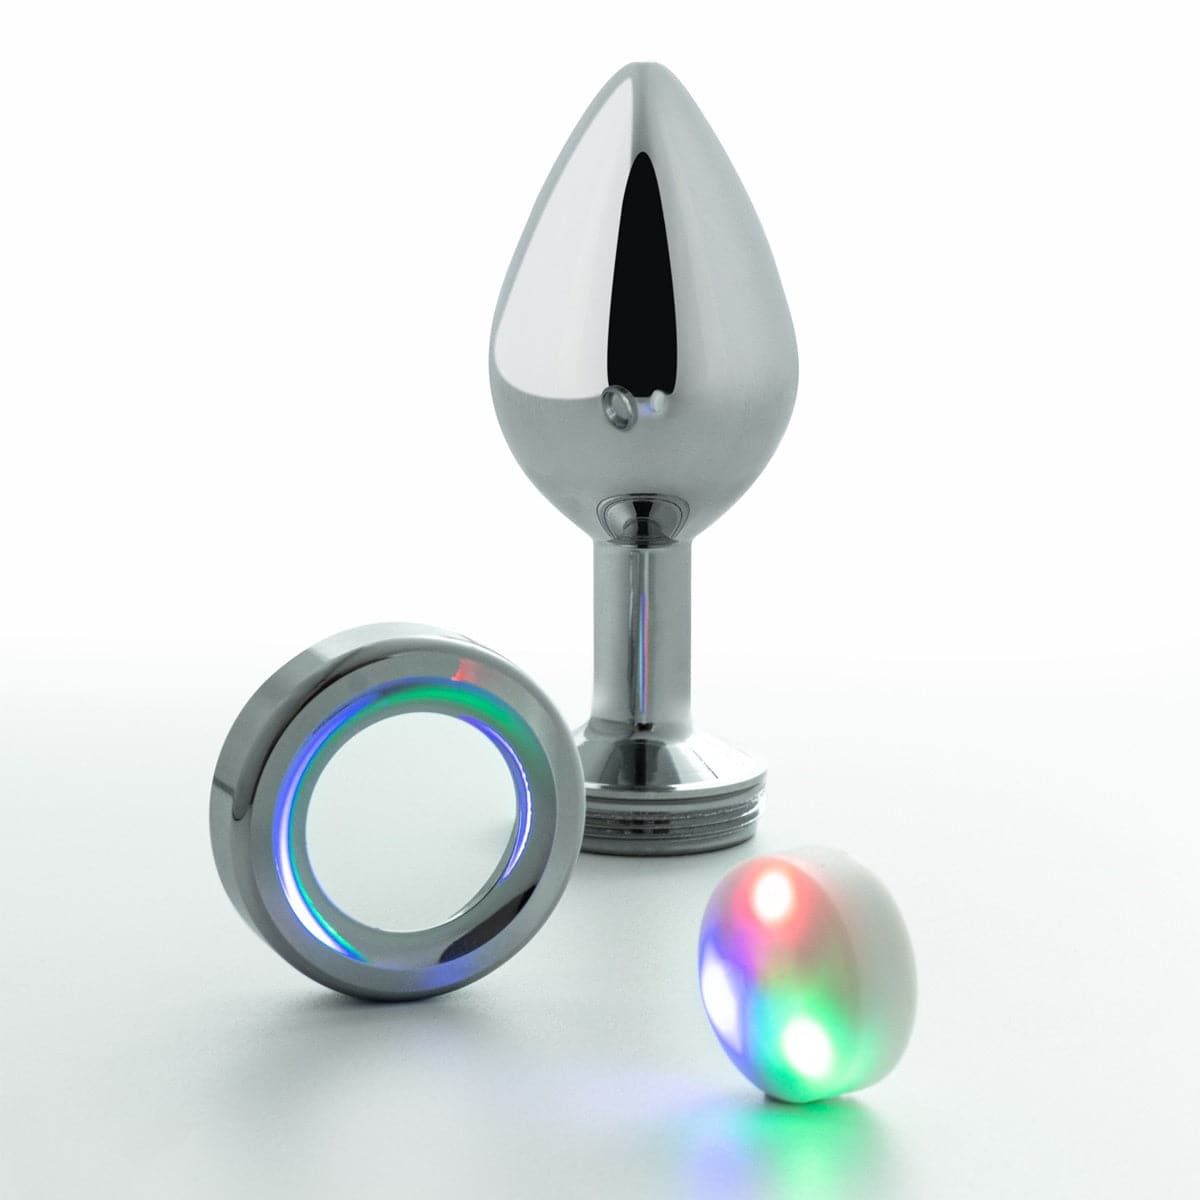 Plug de Metal Pequeno com LED, 7,2cm Ø2,7cm - Ilumine o seu prazer anal!